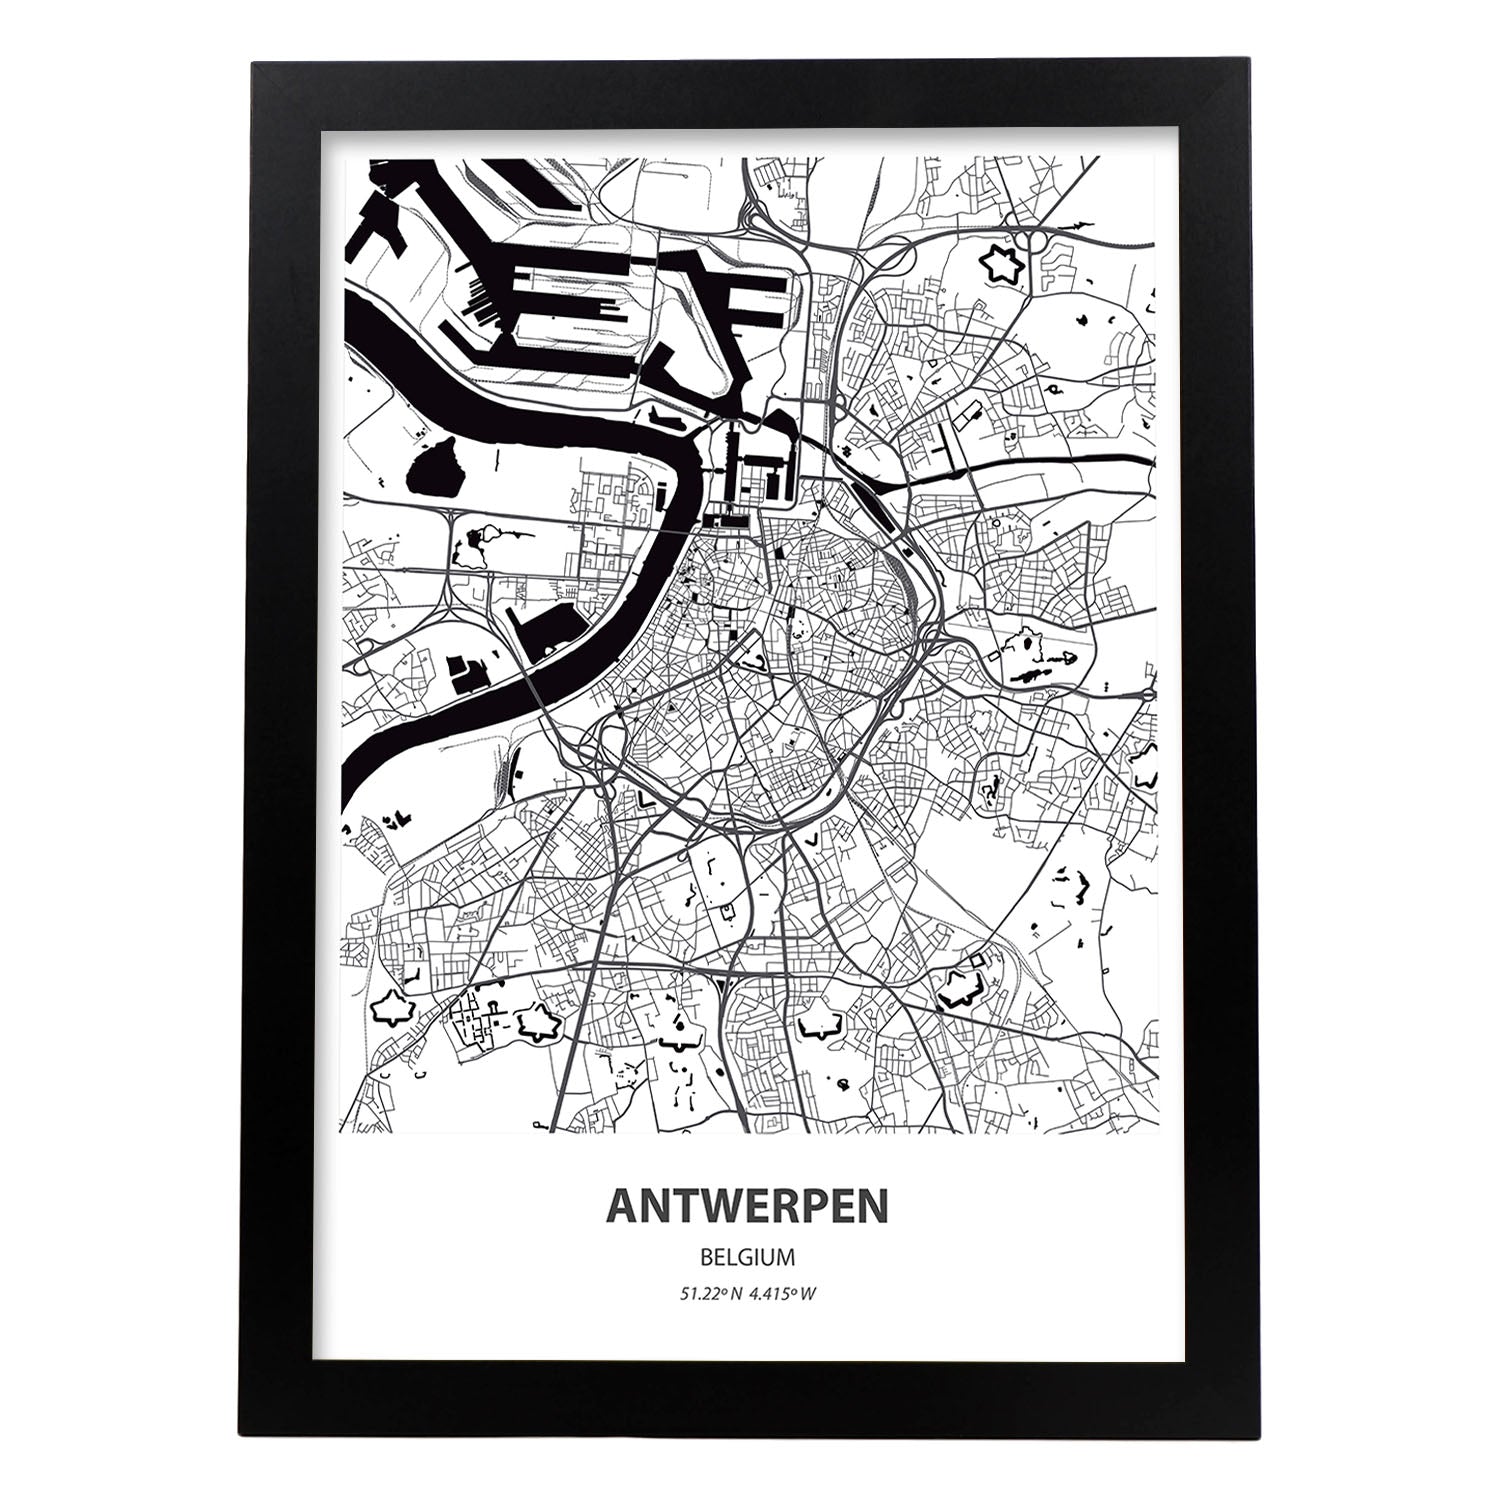 Poster con mapa de Antwerpen - Belgica. Láminas de ciudades de Holanda y Bélgica con mares y ríos en color negro.-Artwork-Nacnic-A3-Marco Negro-Nacnic Estudio SL